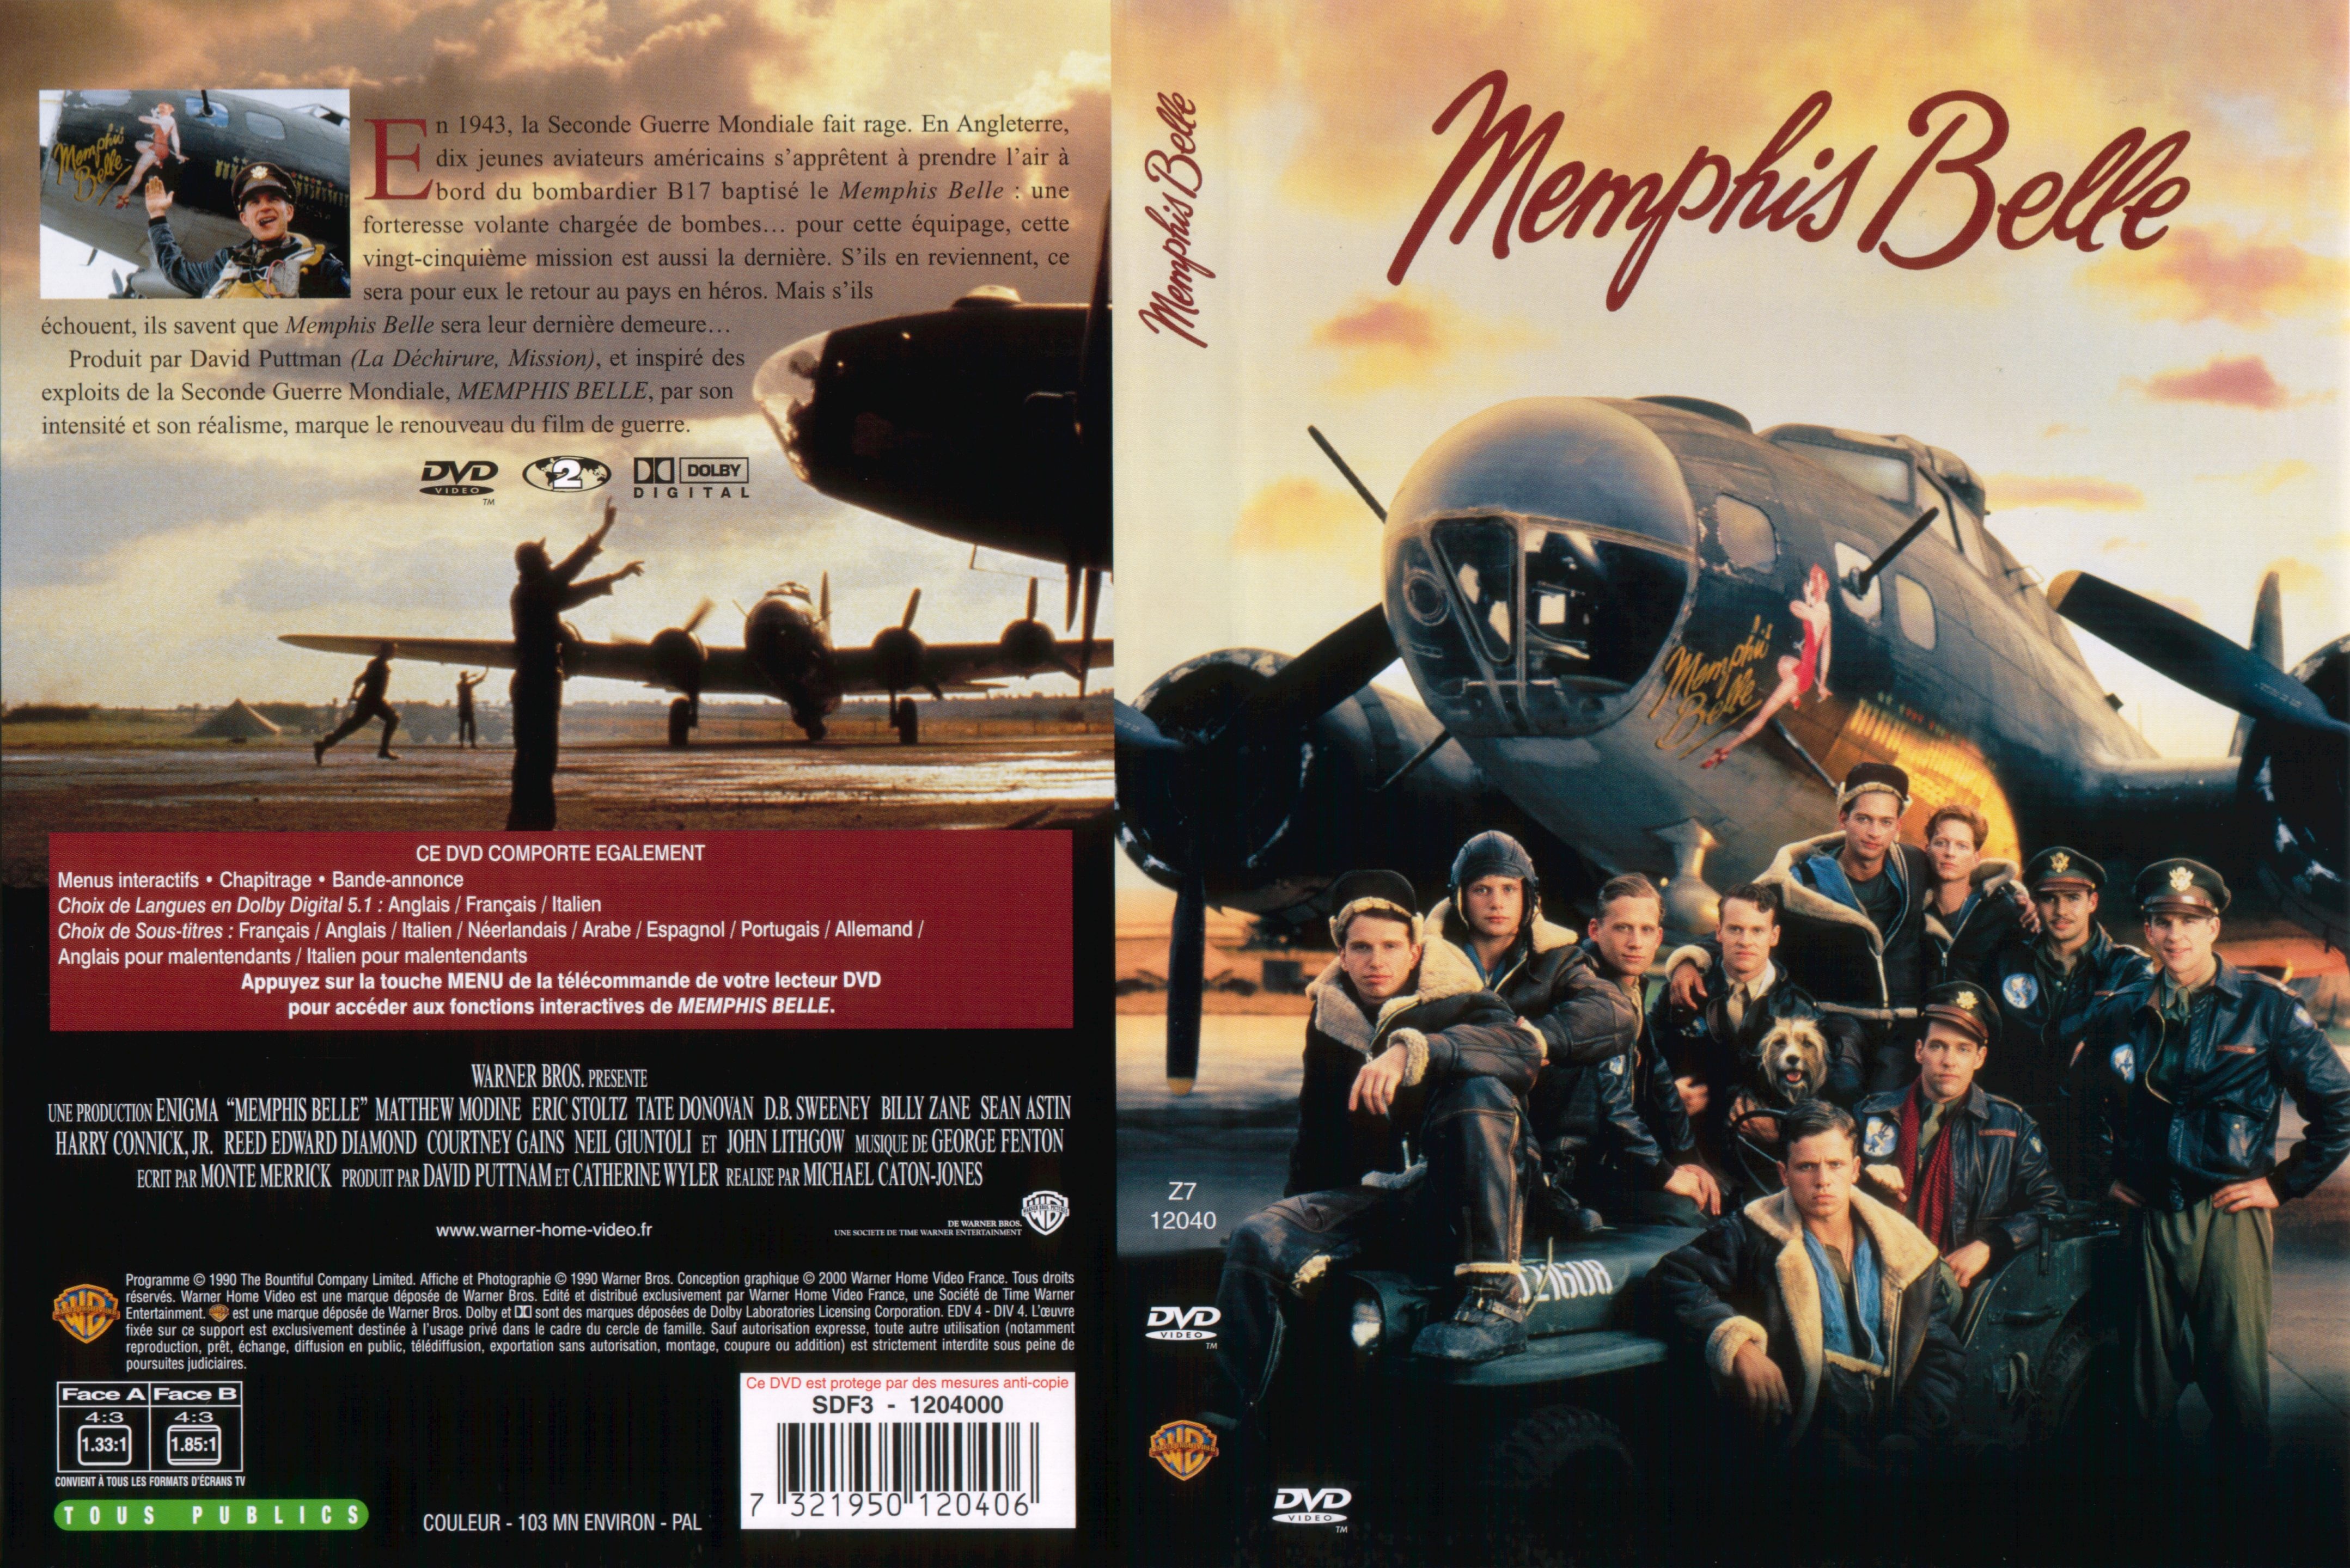 Jaquette DVD Memphis belle v2